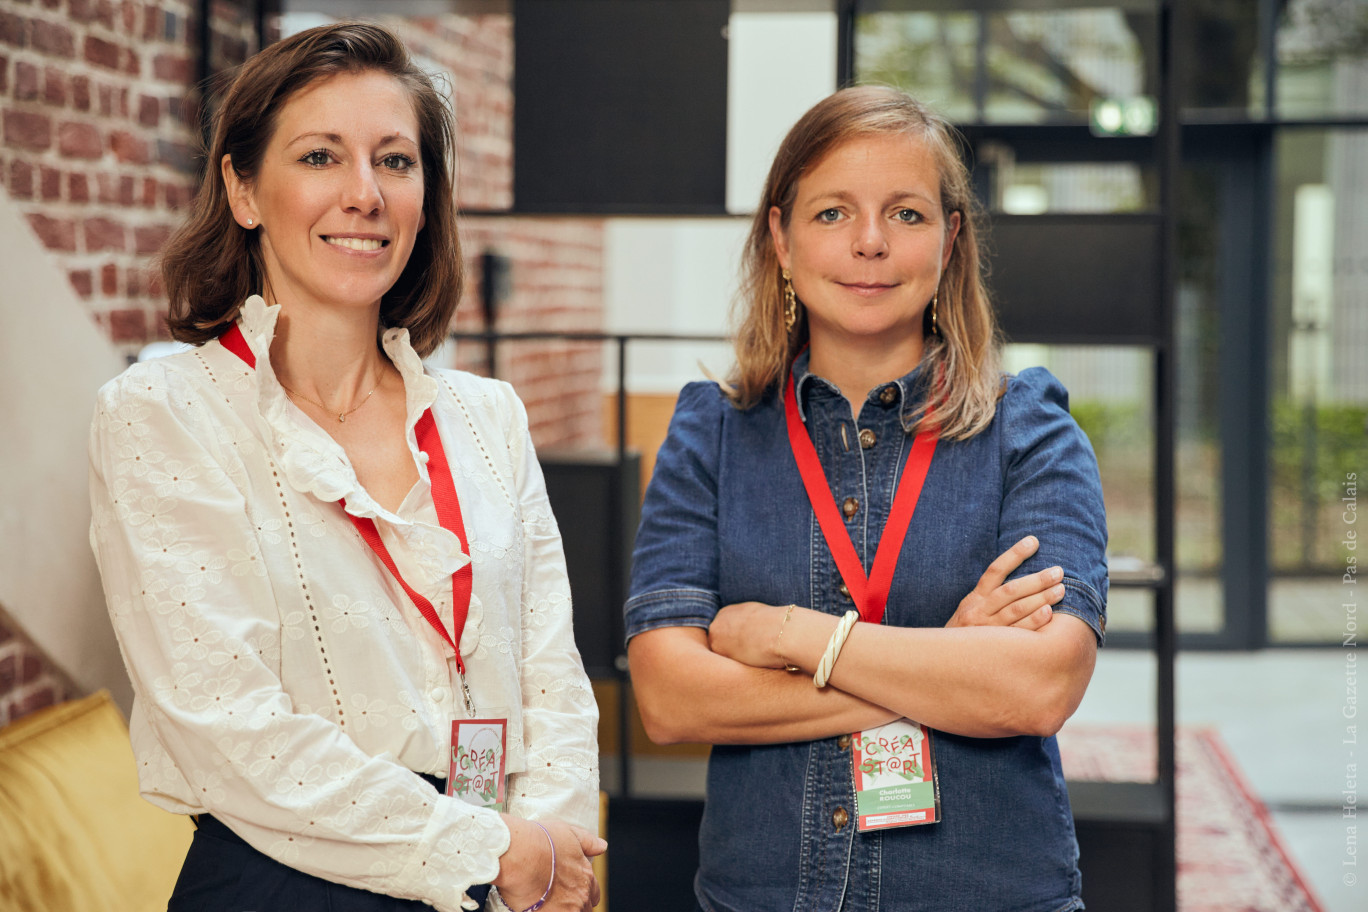 Marie Lelieur et Charlotte Roucou, co-responsables de la commission création et reprise de l'Ordre des Experts comptables. © Lena Heleta